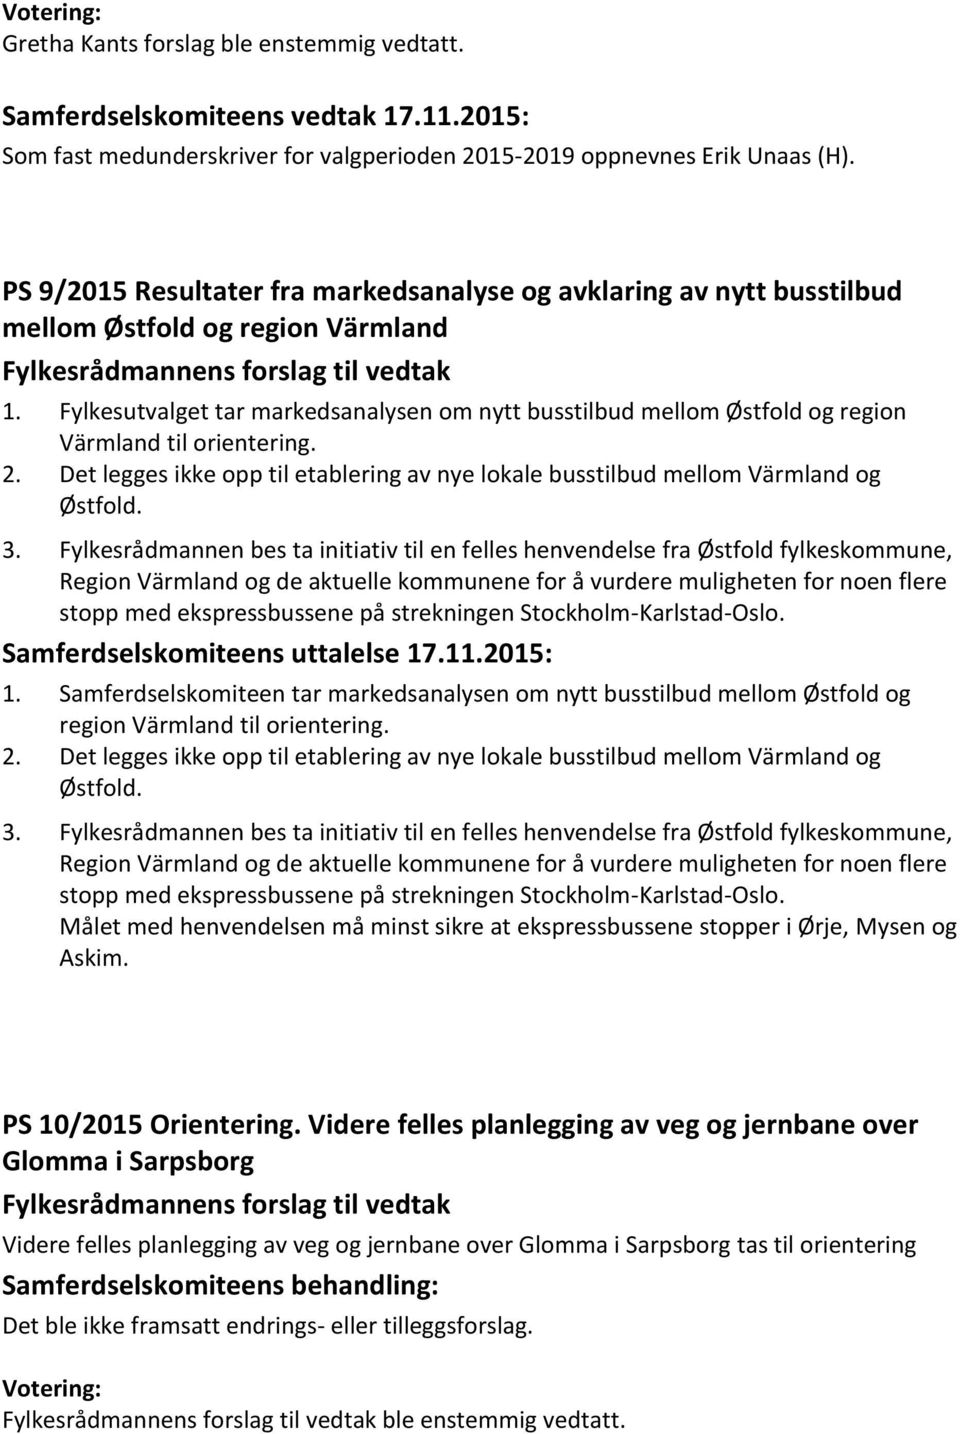 Fylkesutvalget tar markedsanalysen om nytt busstilbud mellom Østfold og region Värmland til orientering. 2. Det legges ikke opp til etablering av nye lokale busstilbud mellom Värmland og Østfold. 3.